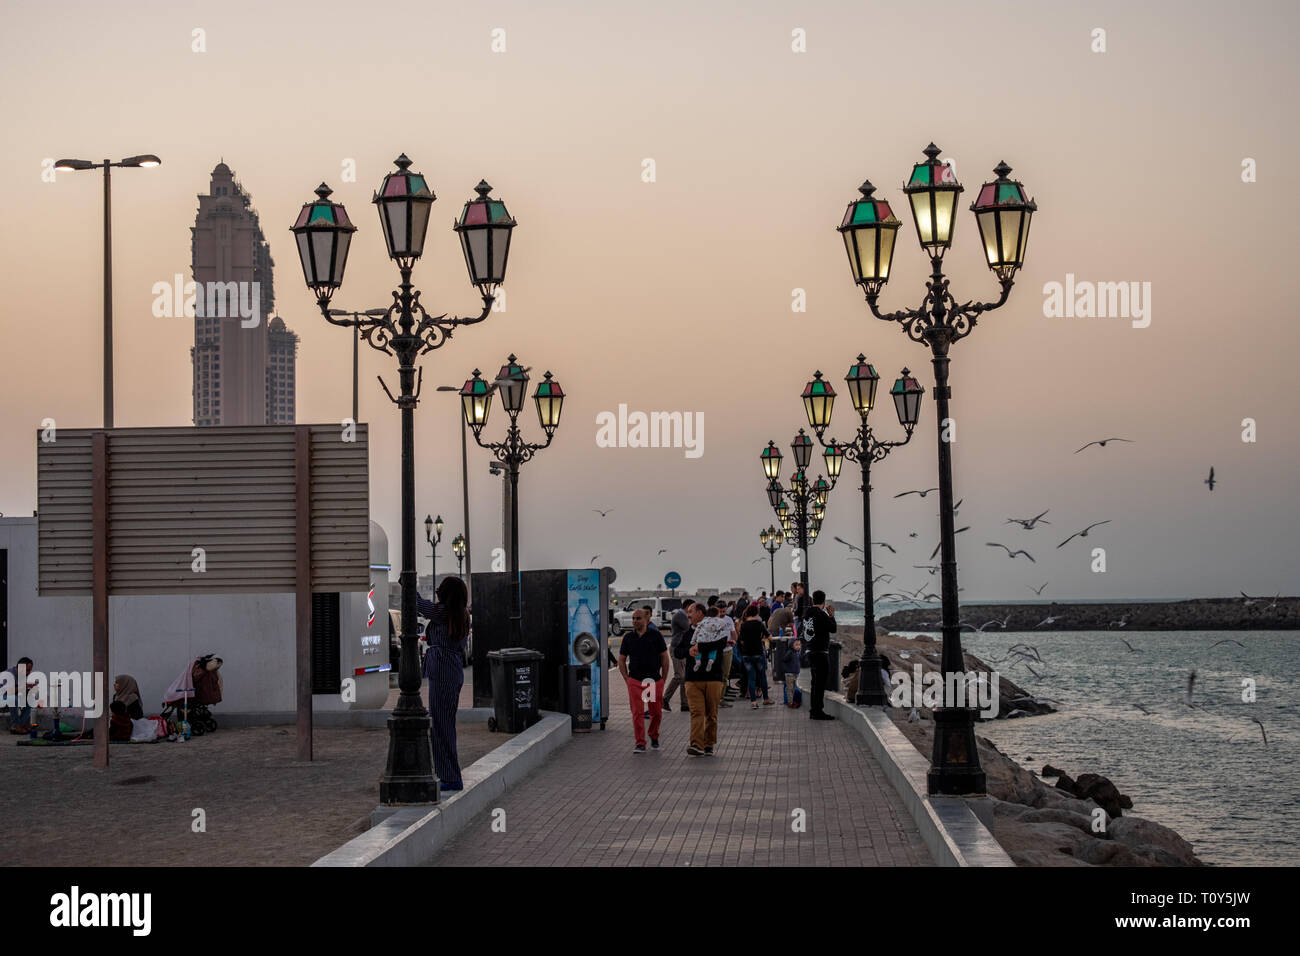 February 26, 2019 - Abu Dhabi, UAE: People enjoying at Cornich Marina lit with Lampost at evening, Abu Dhabi, UAE Stock Photo